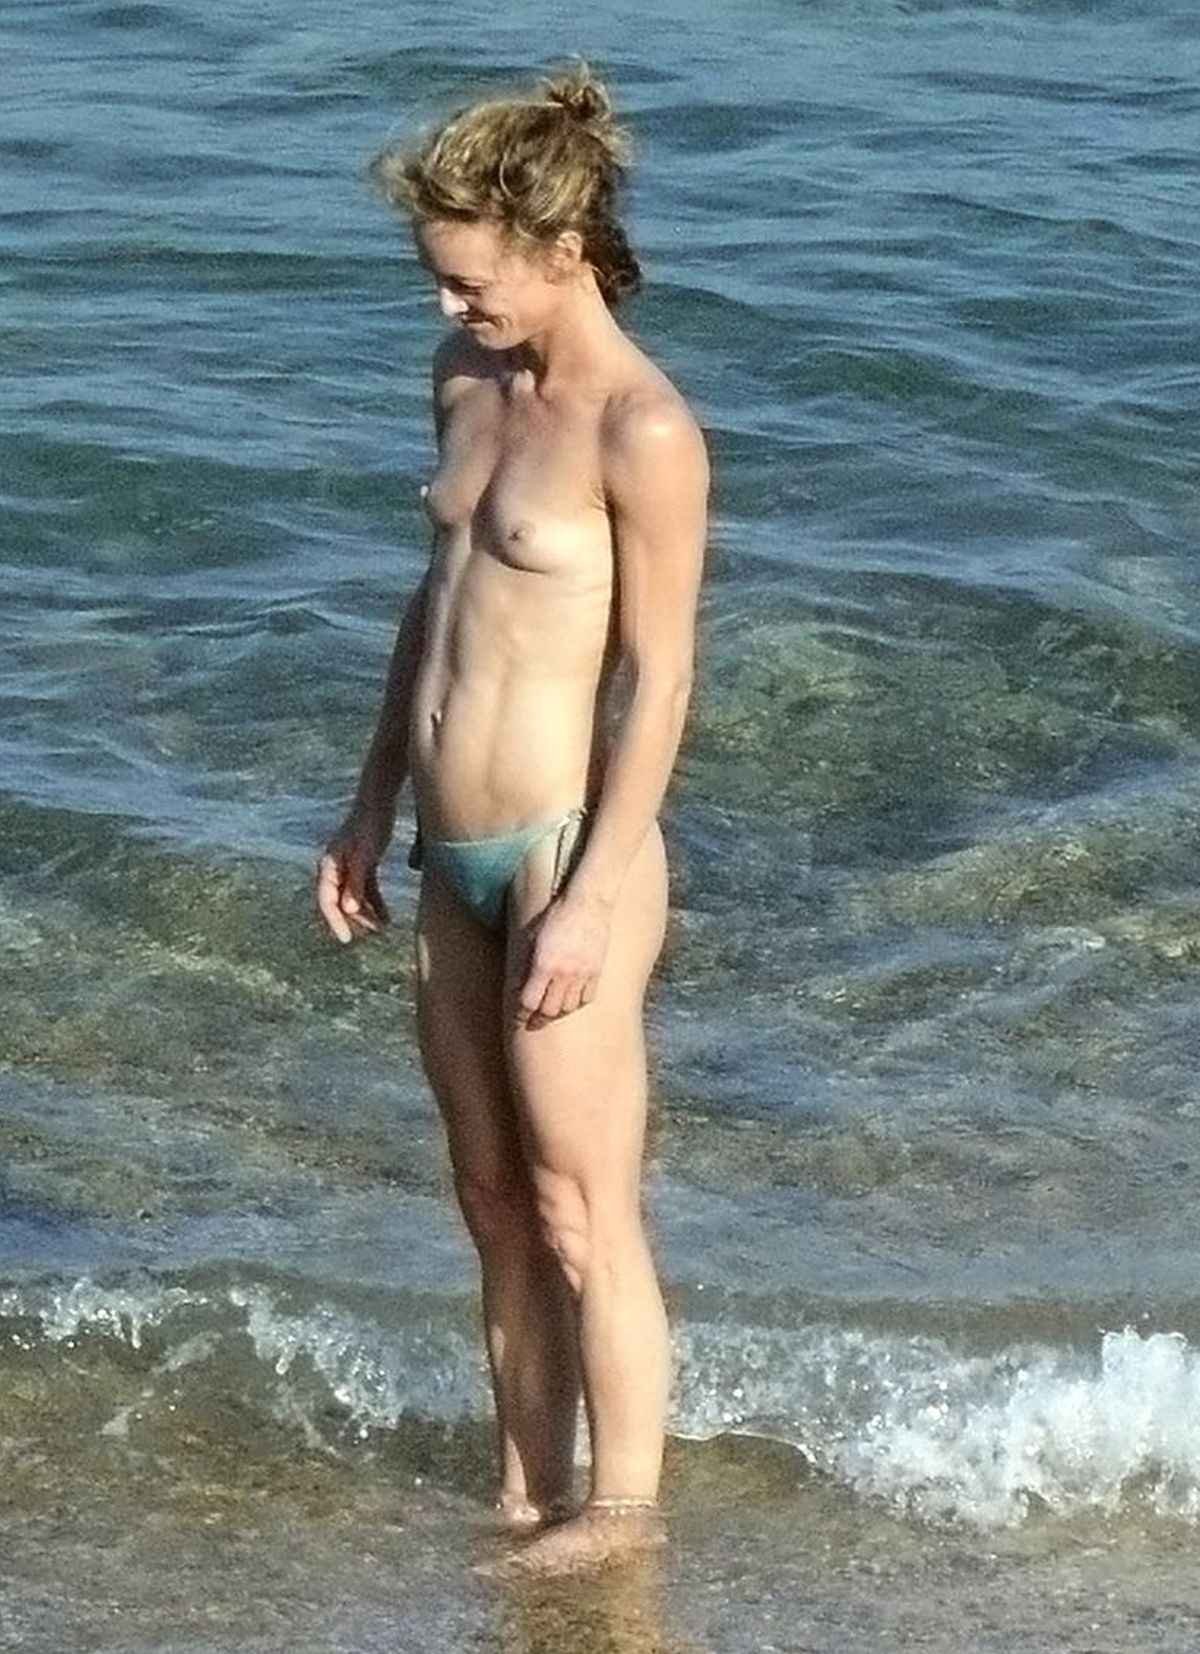 Vanessa Paradis seins nus à la plage, aout 2015